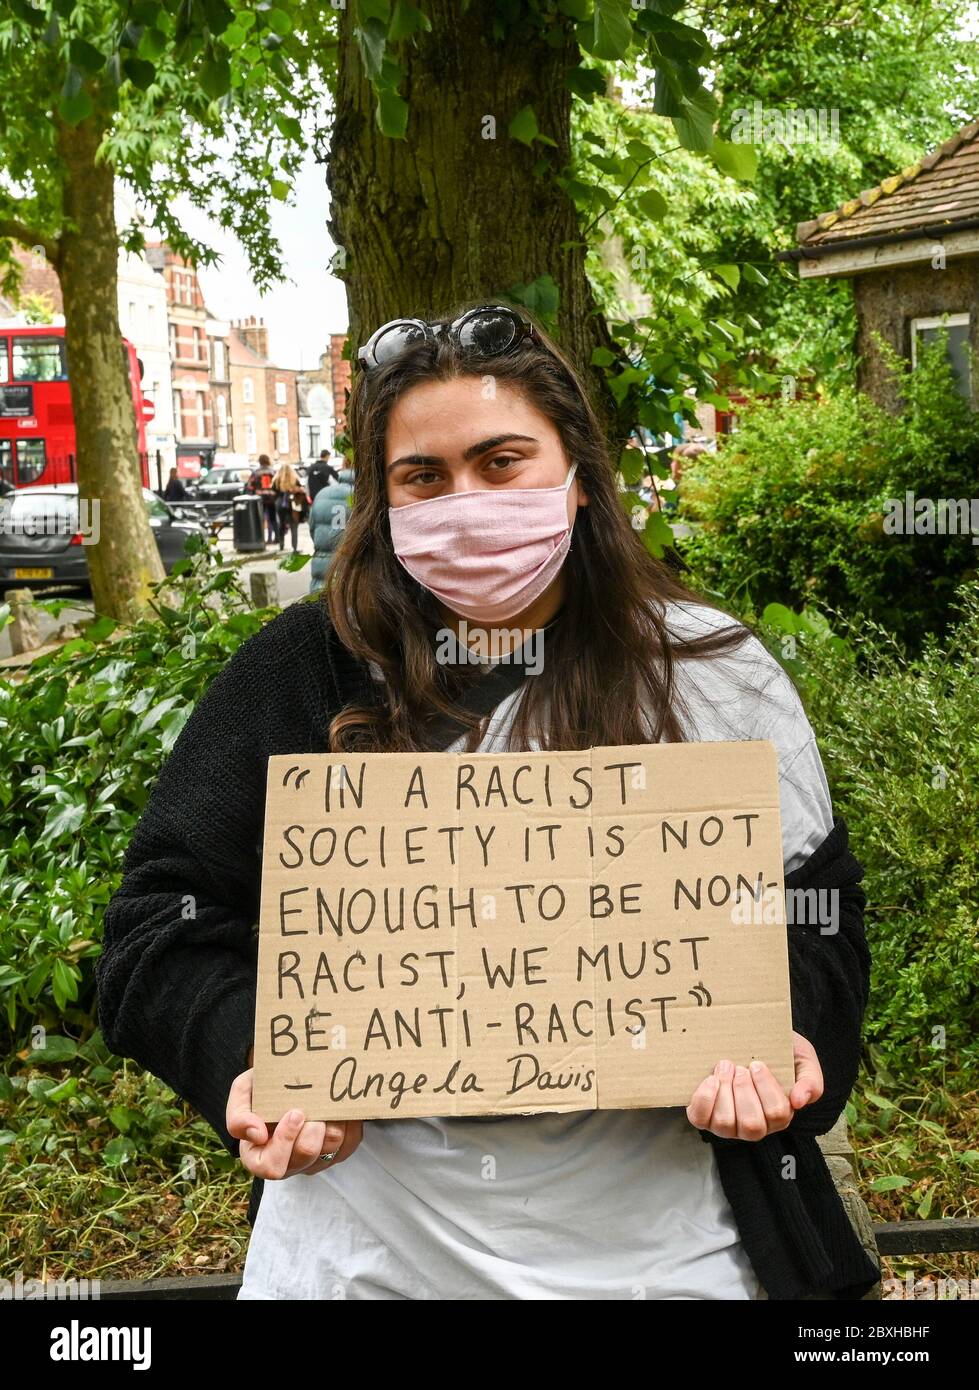 Eine junge Frau mit einem Plakat, die Angela Davis zitiert: "In einer rassistischen Gesellschaft reicht es nicht aus, nicht-rassistisch zu sein, wir müssen antirassistisch sein." Schwarze Leben sind wichtig. Stockfoto